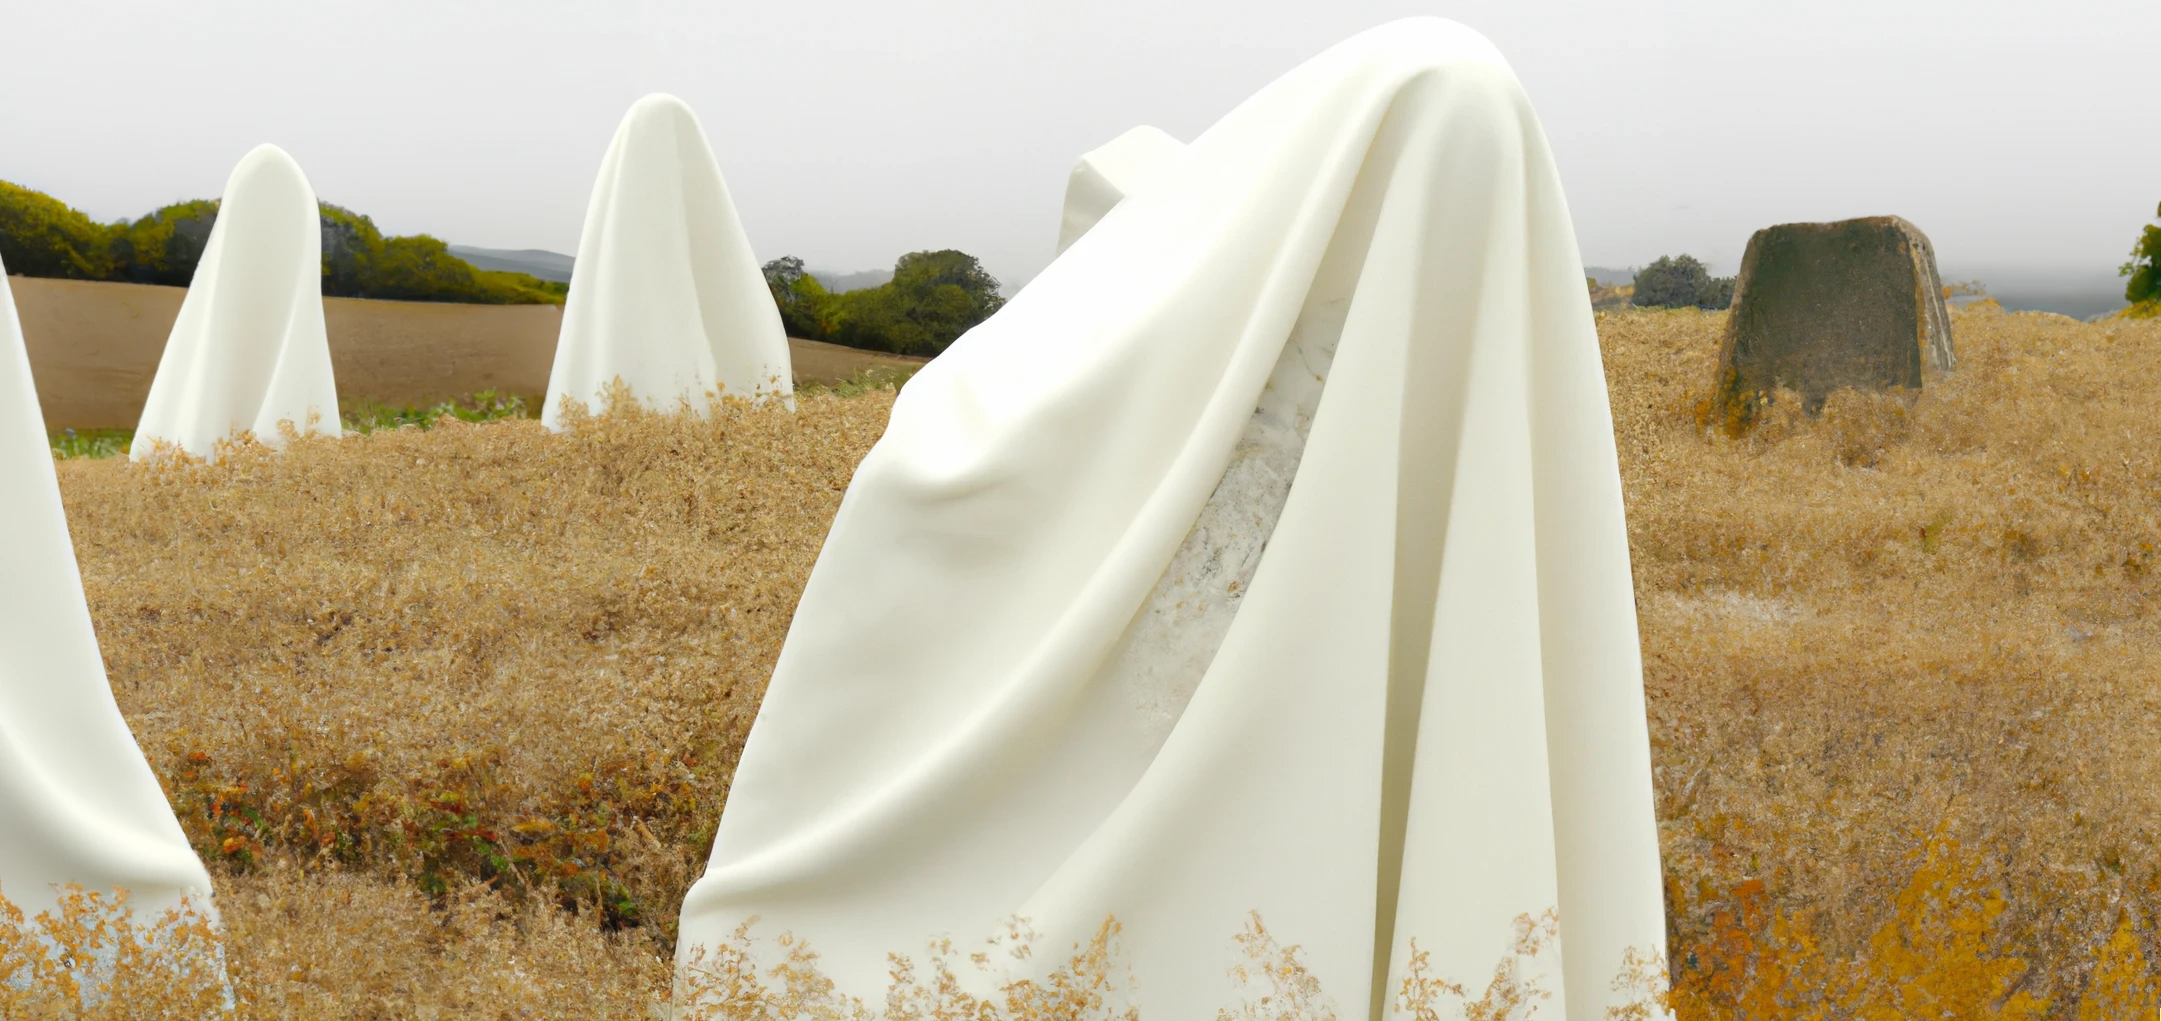 DALL·E 2022-12-20 19.51.19 - photographie studio de gigantesques menhirs invisibles sous des draps blancs dans une prairie déserte au crépsucule dans les tons gris et beige.png